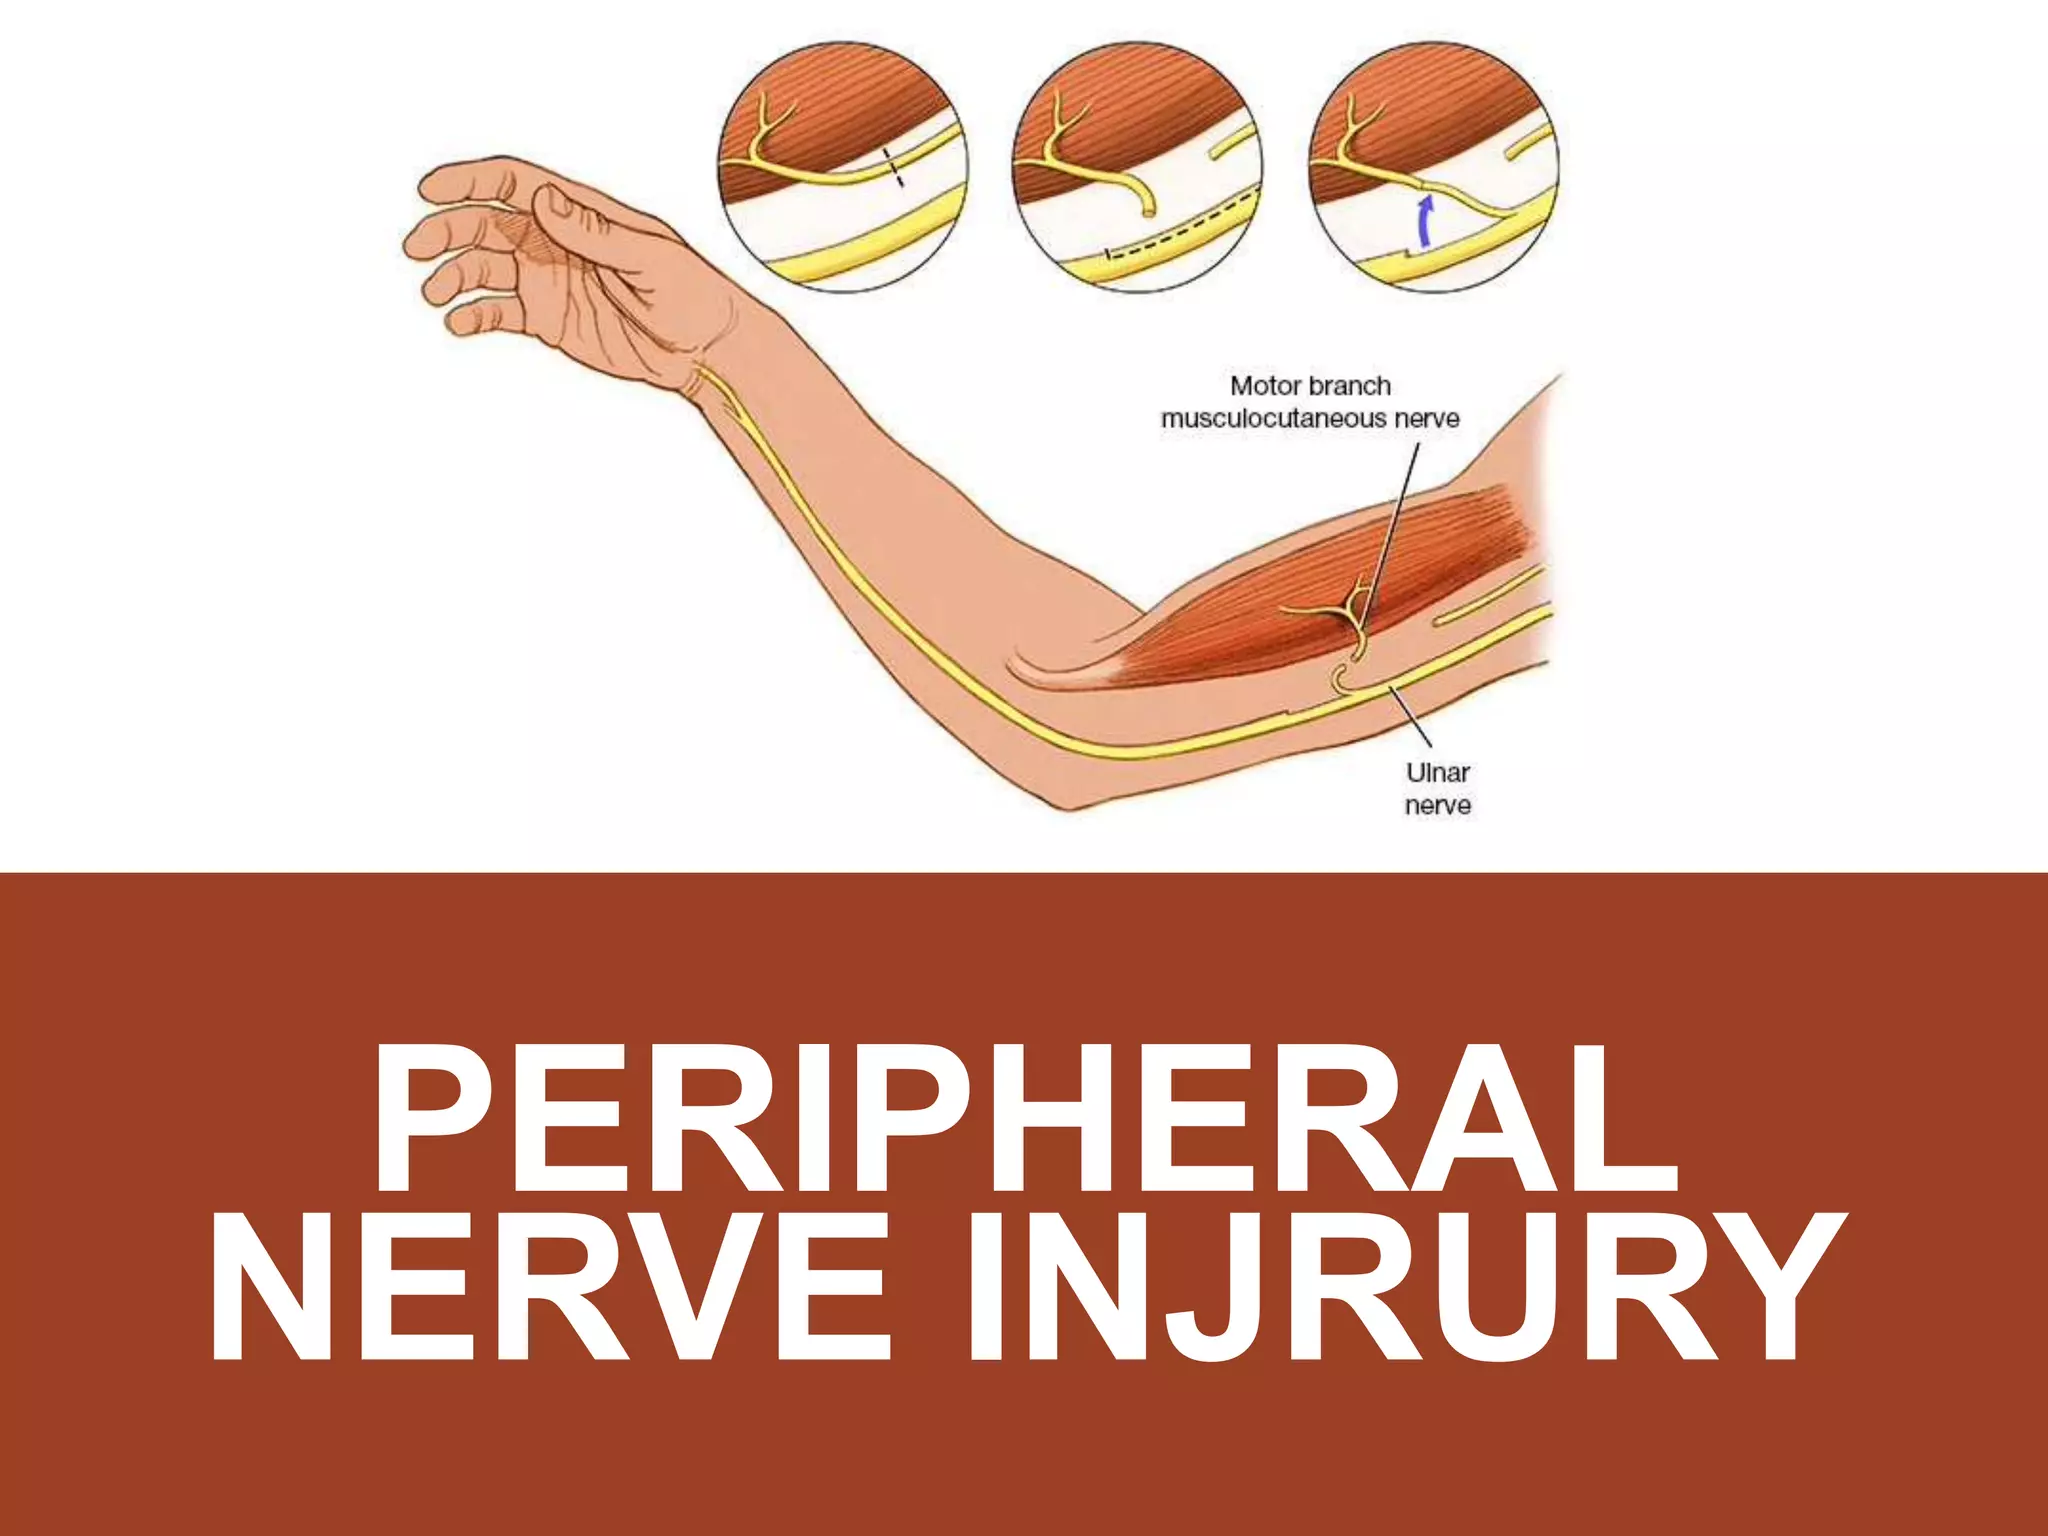 Peripheral nerve injury.